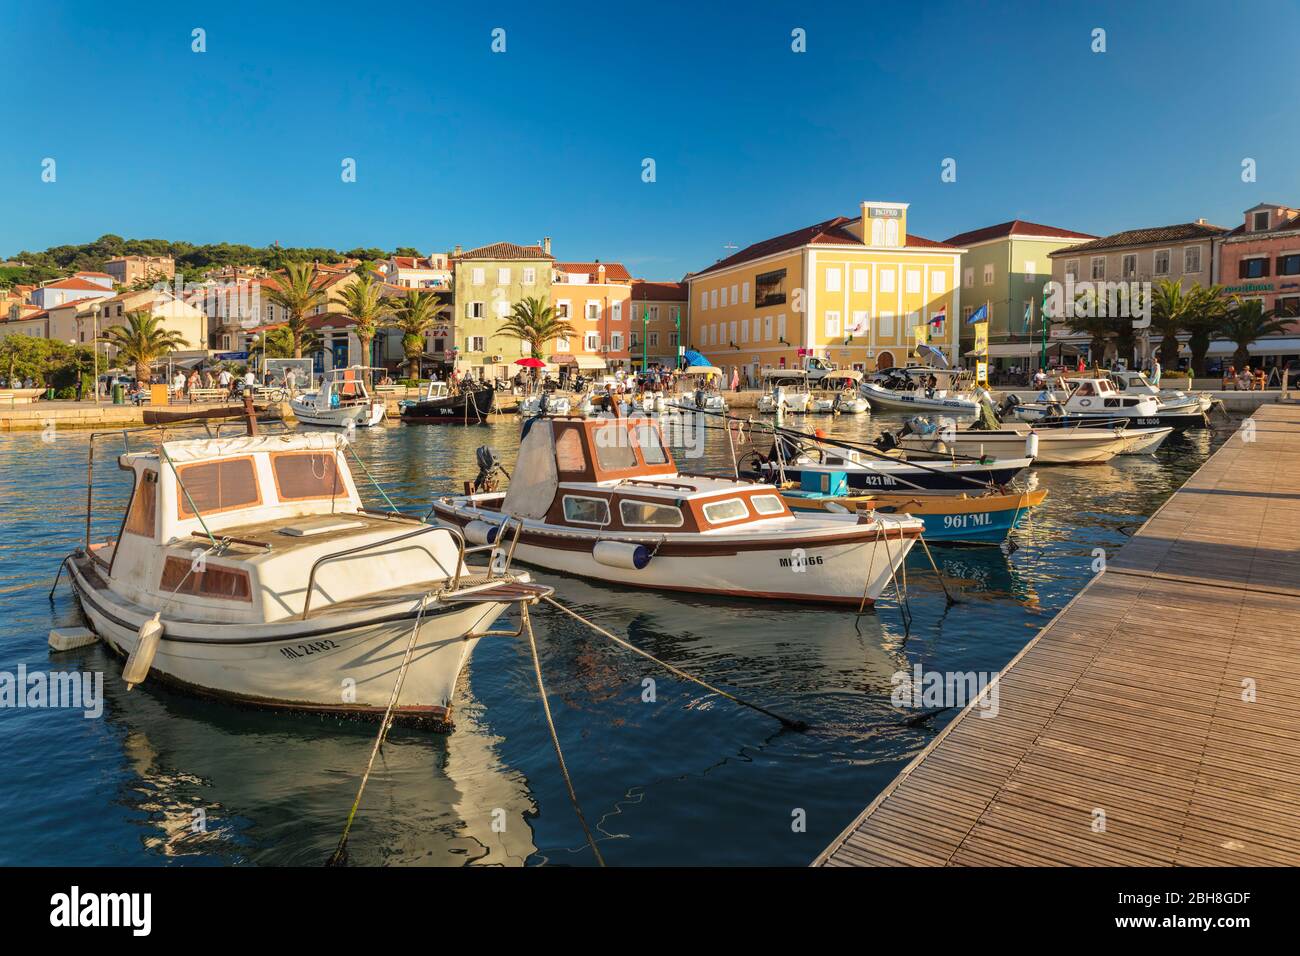 Mali Losinj bei Sonnenuntergang, Insel Losinj, Kvarner Bucht, Kroatien Stock Photo